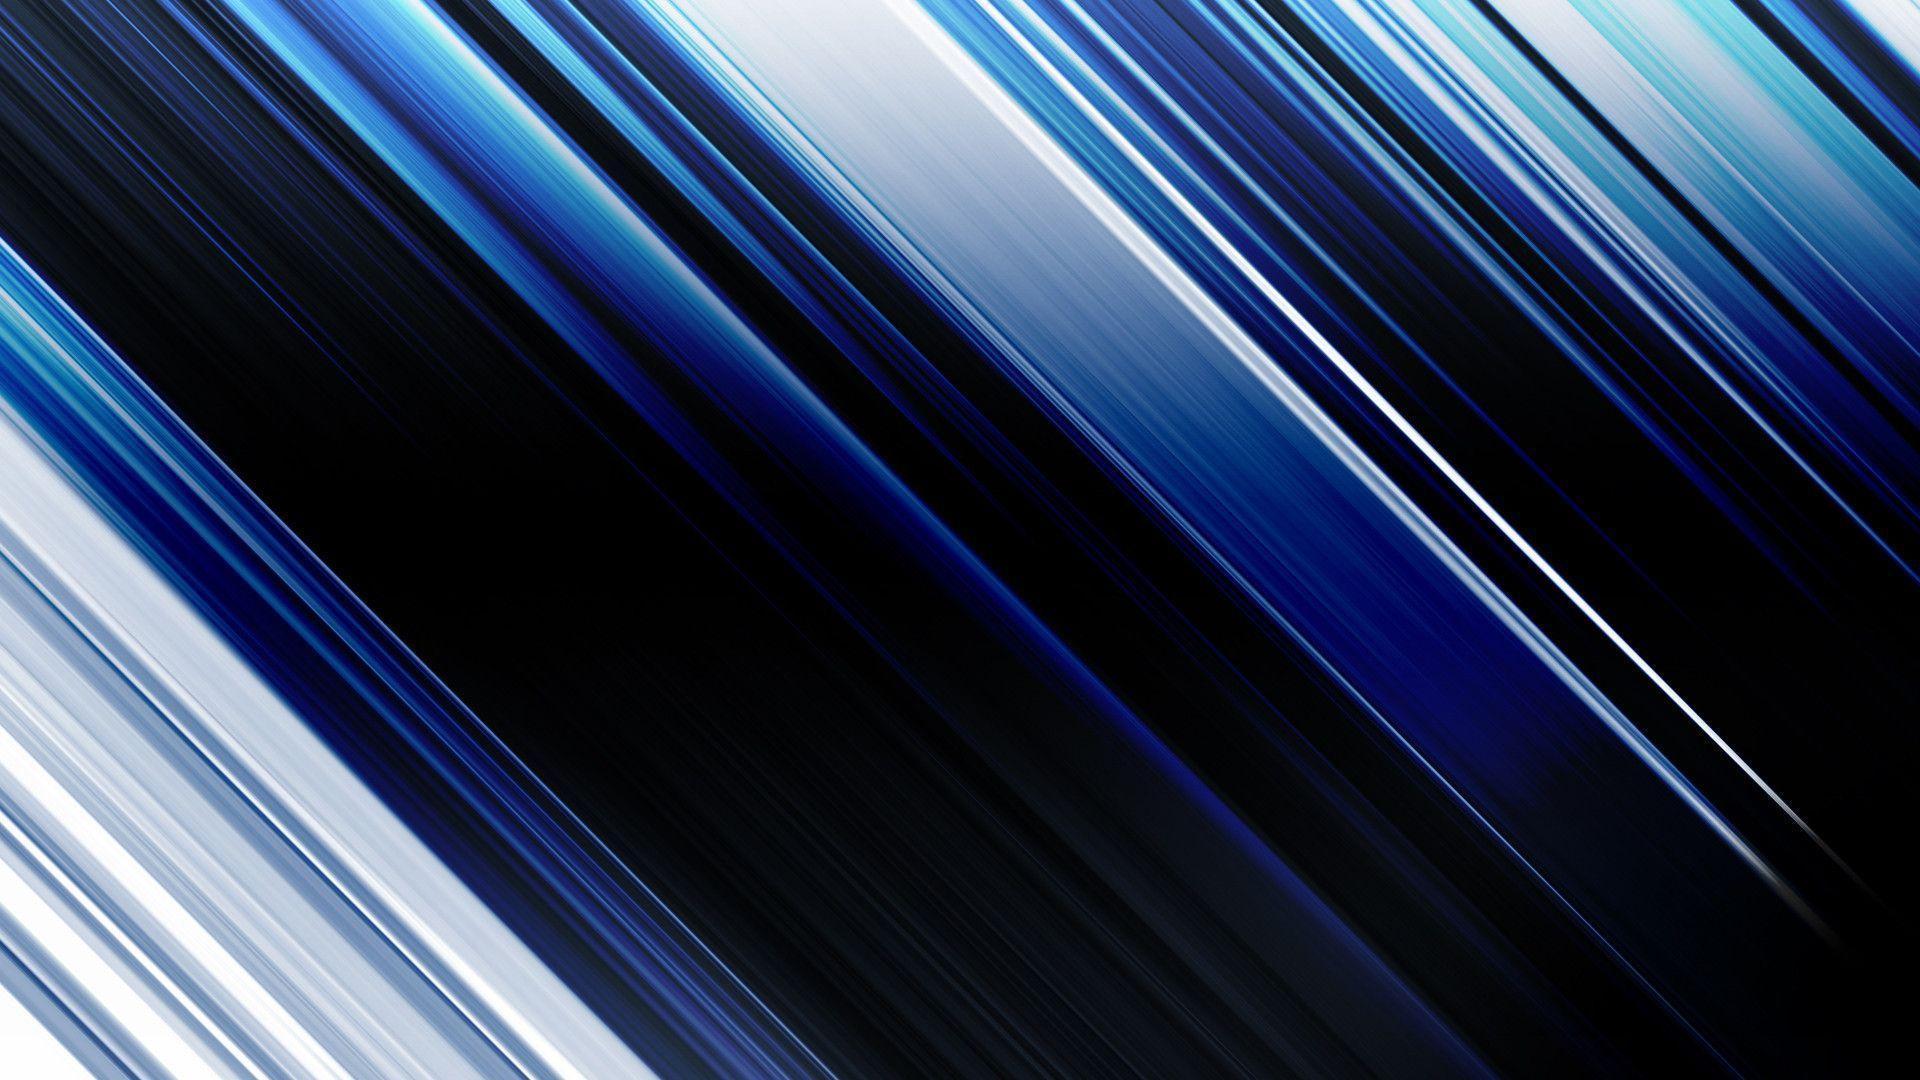 HD Blue Abstract Wallpaper. High Definition Wallpaper